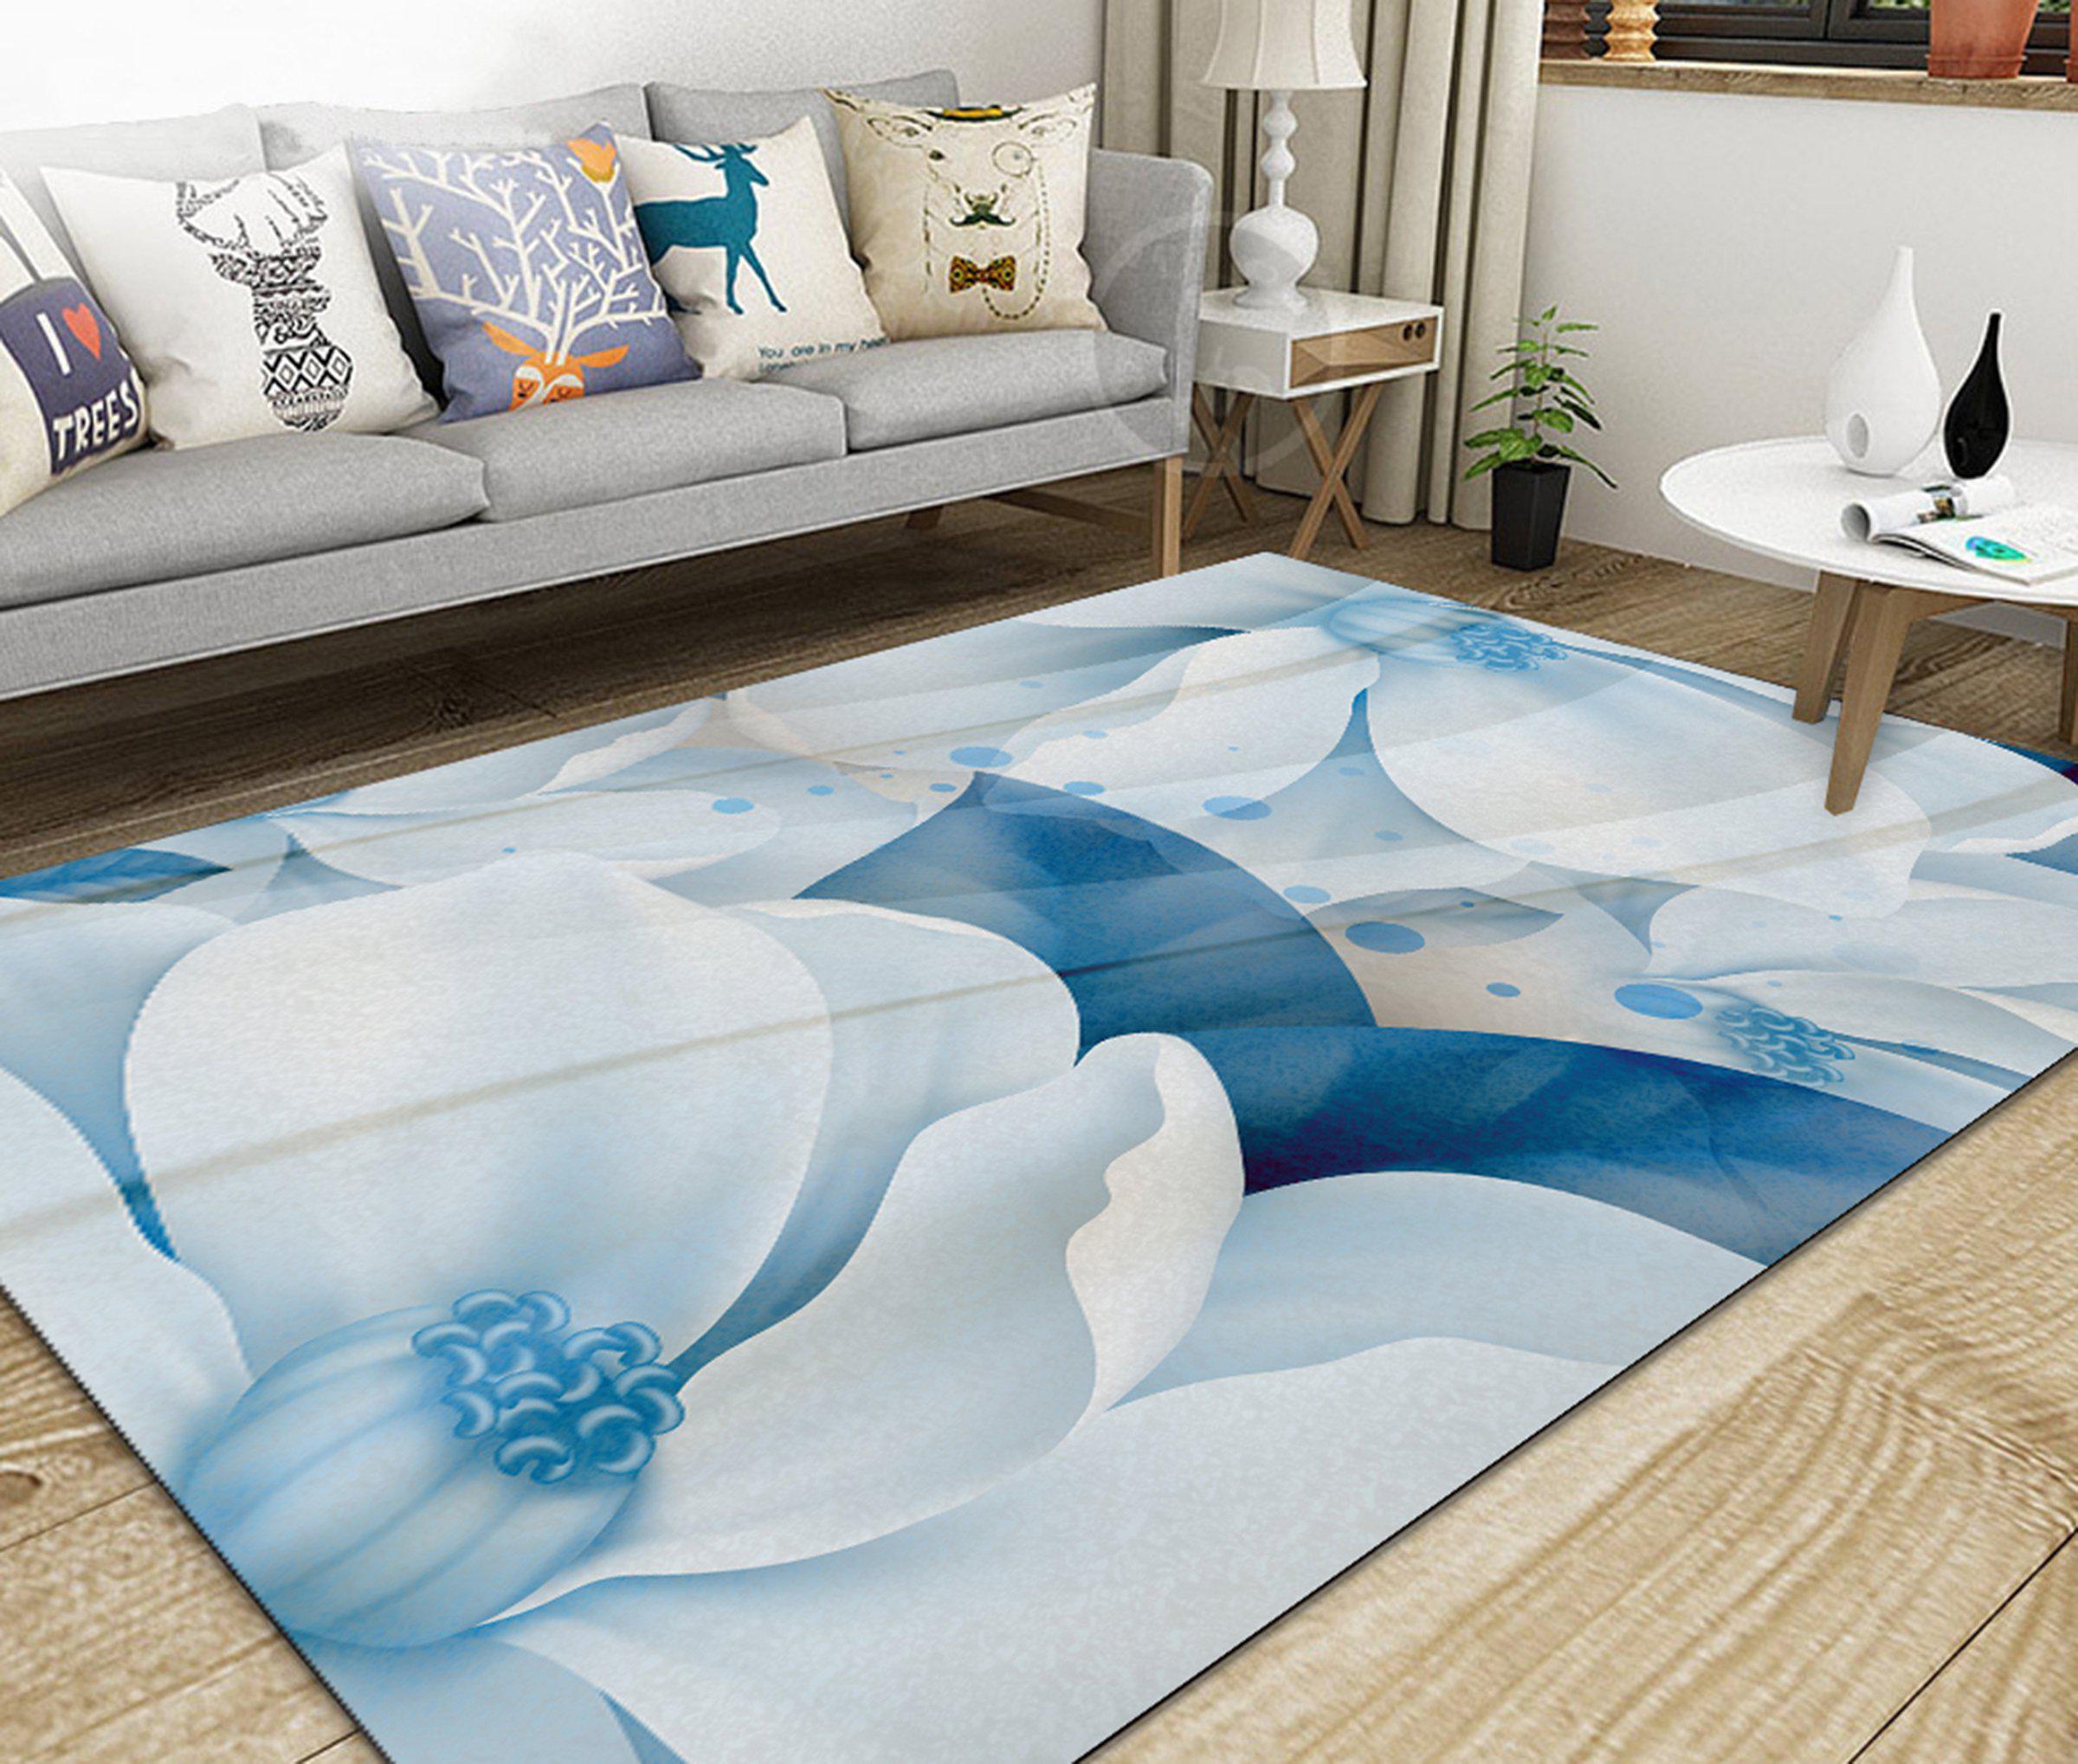 3D Home Carpet White Flower WG425 Non Slip Rug Mat, 140cmx200cm (55.1"x78.8")